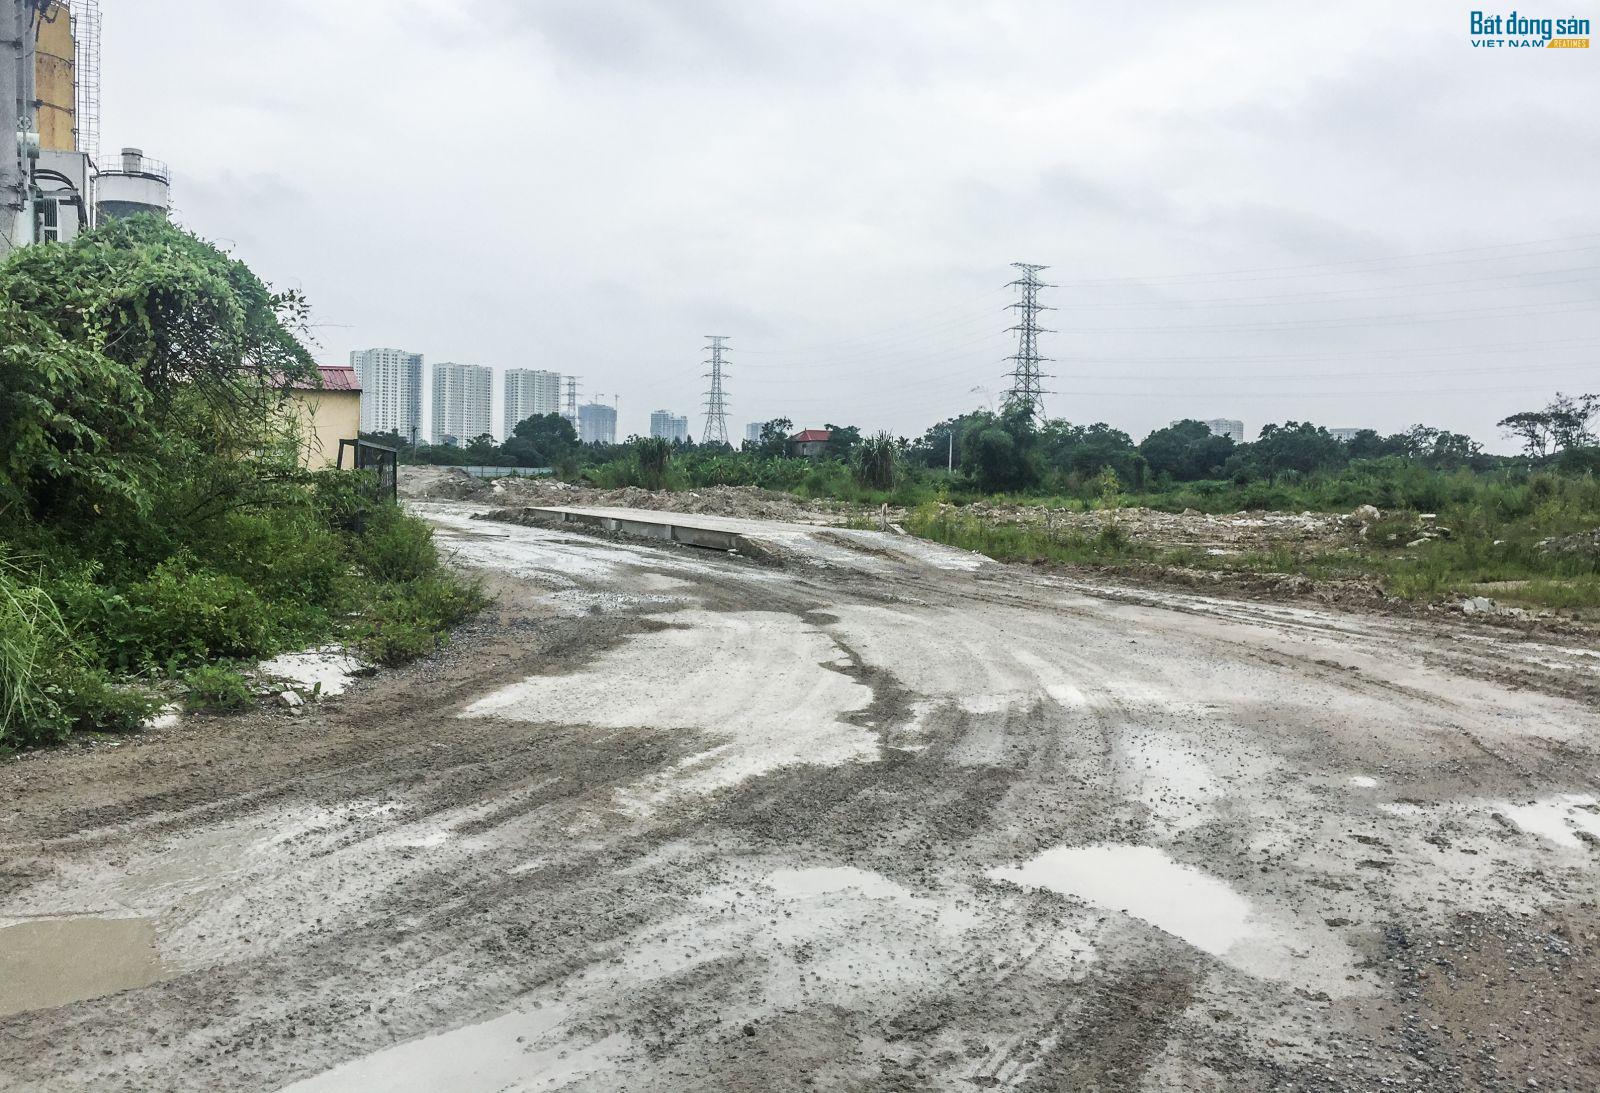 Đến nay, sau hơn 1 thập kỷ, dự án Khu đô thị mới Thịnh Liệt vẫn chỉ là bãi đất trống mọc đầy cỏ dại.